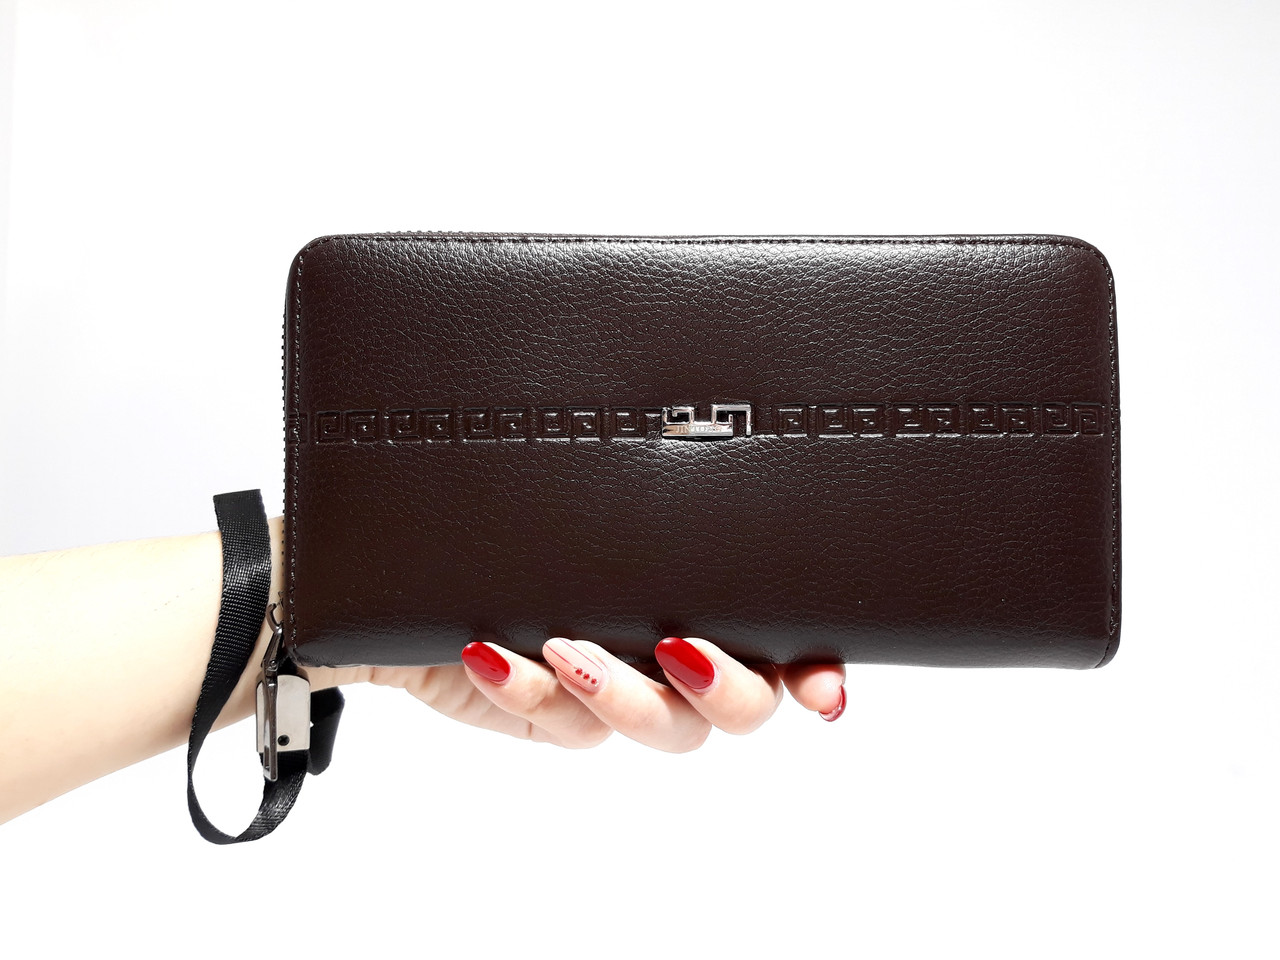 Чоловічий коричневий гаманець на руку, нова модель 2018 року за доступною ціною